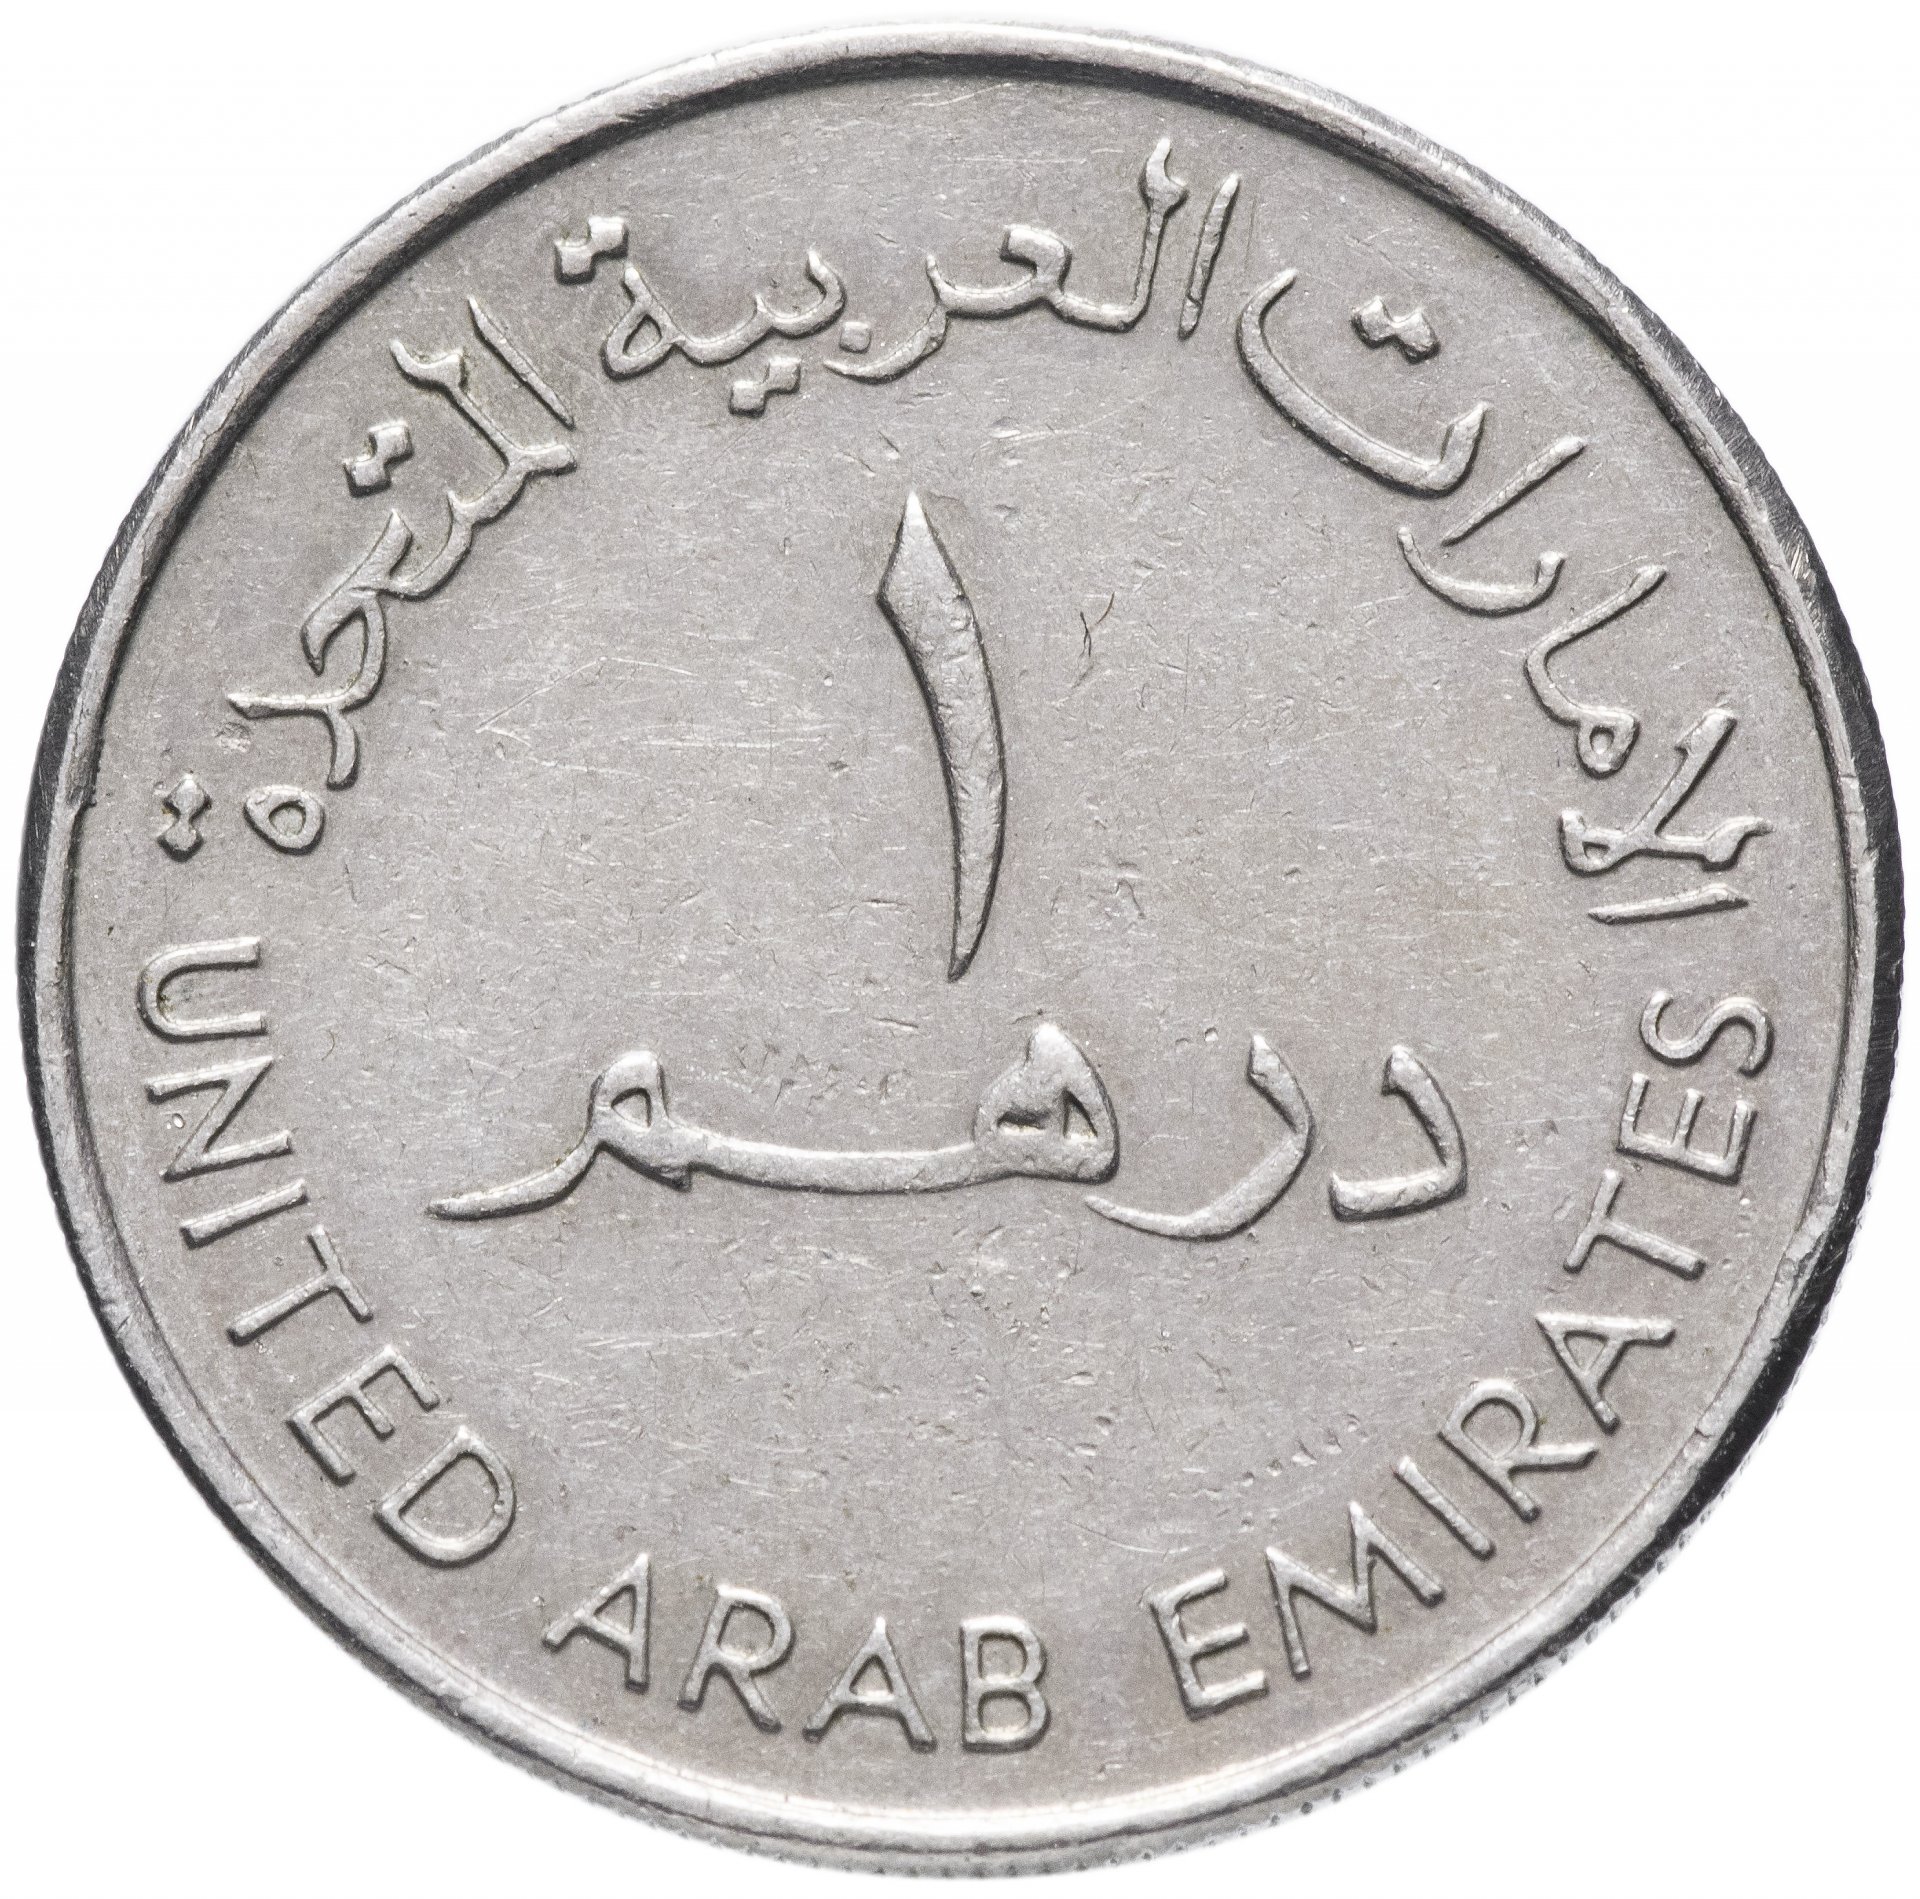 330 дирхам. Монета 1 дирхам (ОАЭ) арабские эмираты.. Монеты арабских Эмиратов. Арабская монета 1/2. 1 Дирхам 1995-2007.